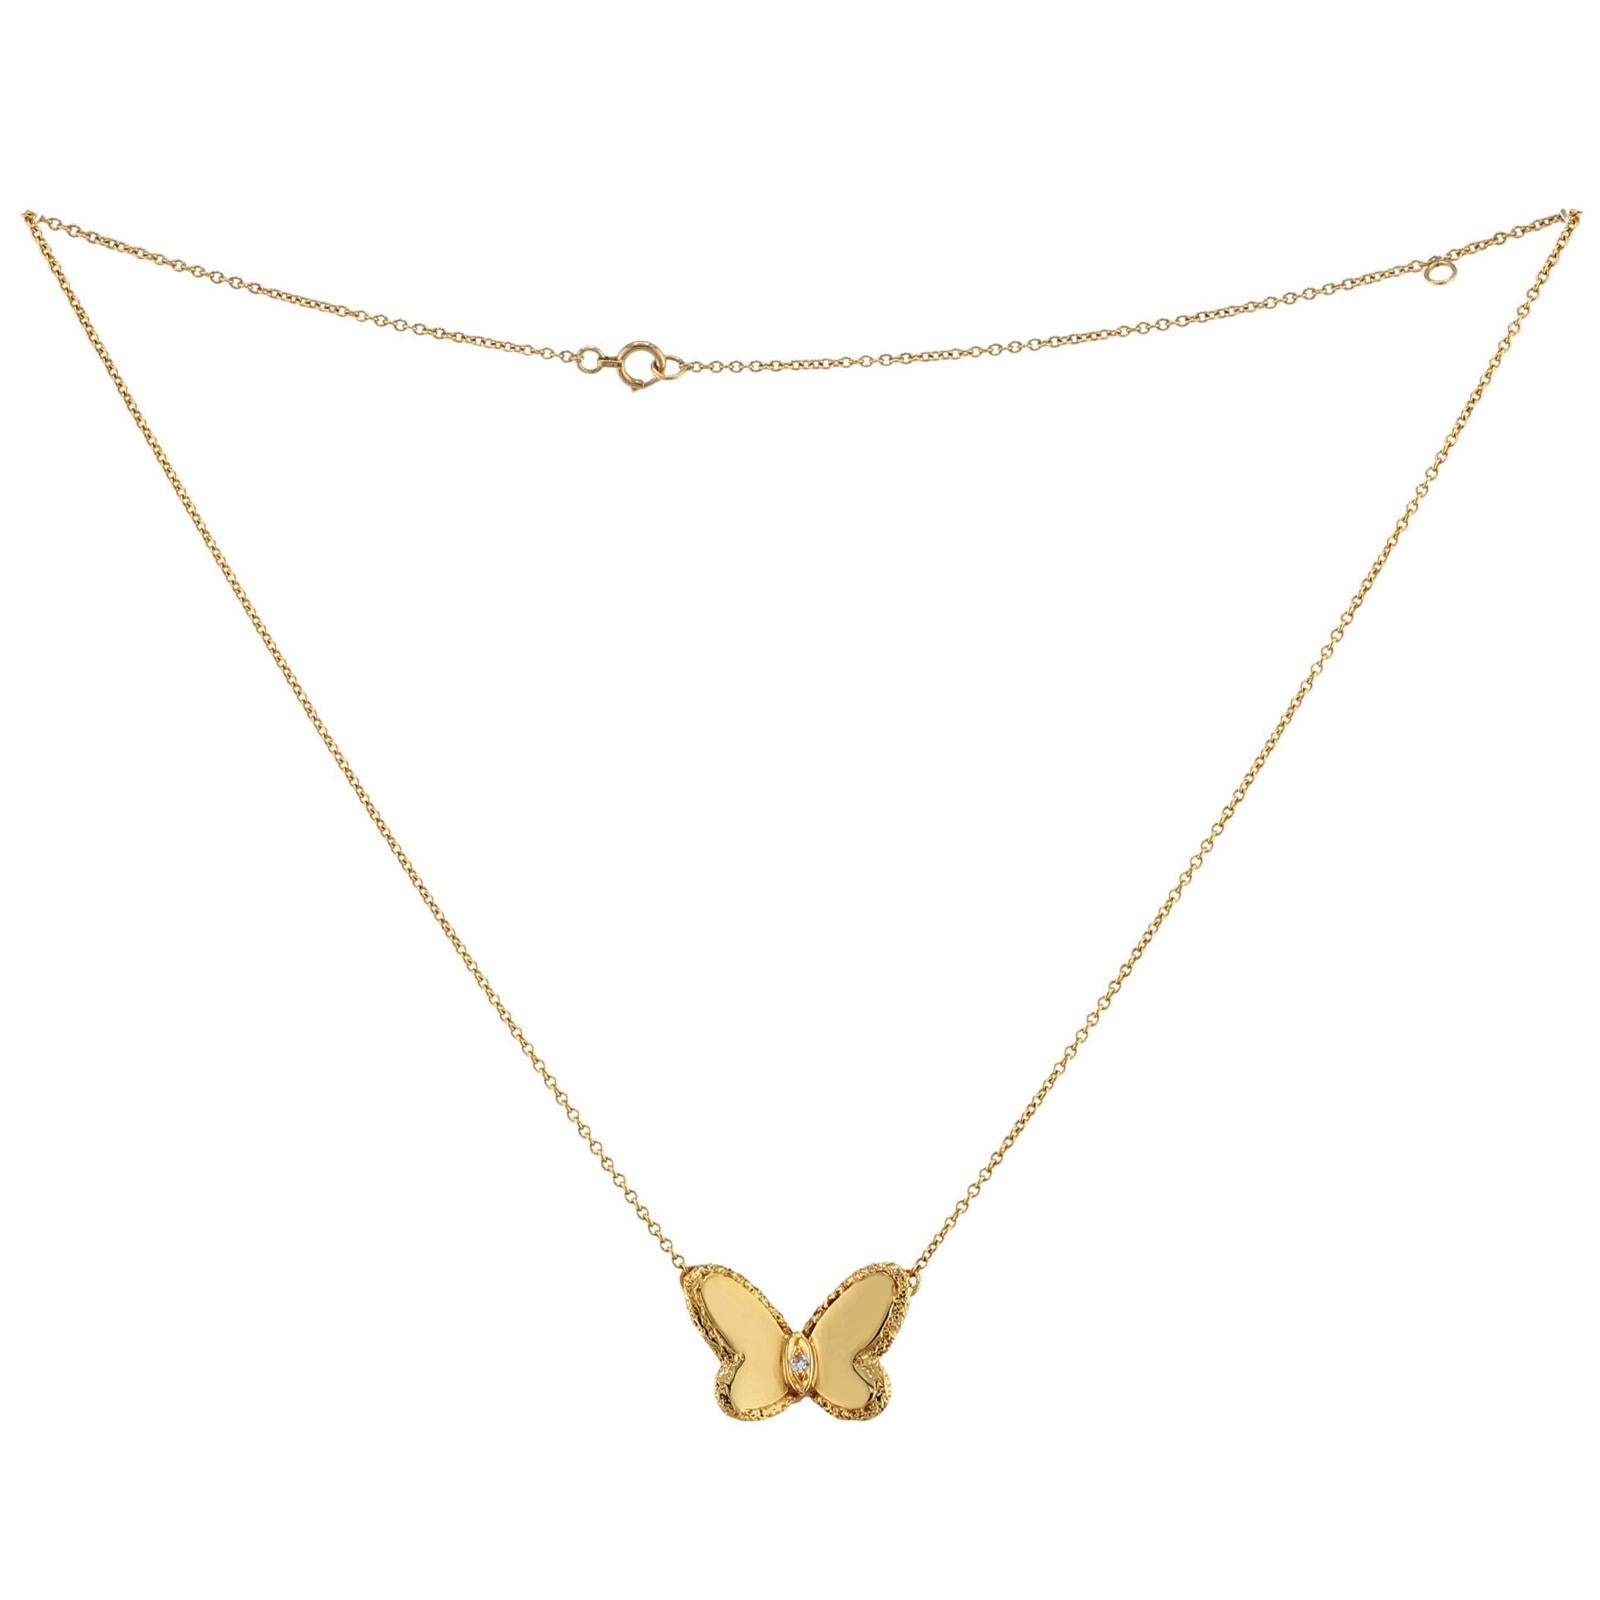 Ce rare collier vintage Van Cleef & Arpels de la collection emblématique Flying Beauties est réalisé en or jaune 18 carats texturé et rehaussé d'un diamant solitaire taille brillant d'une valeur estimée à 0,03 carat. Fabriqué en France dans les